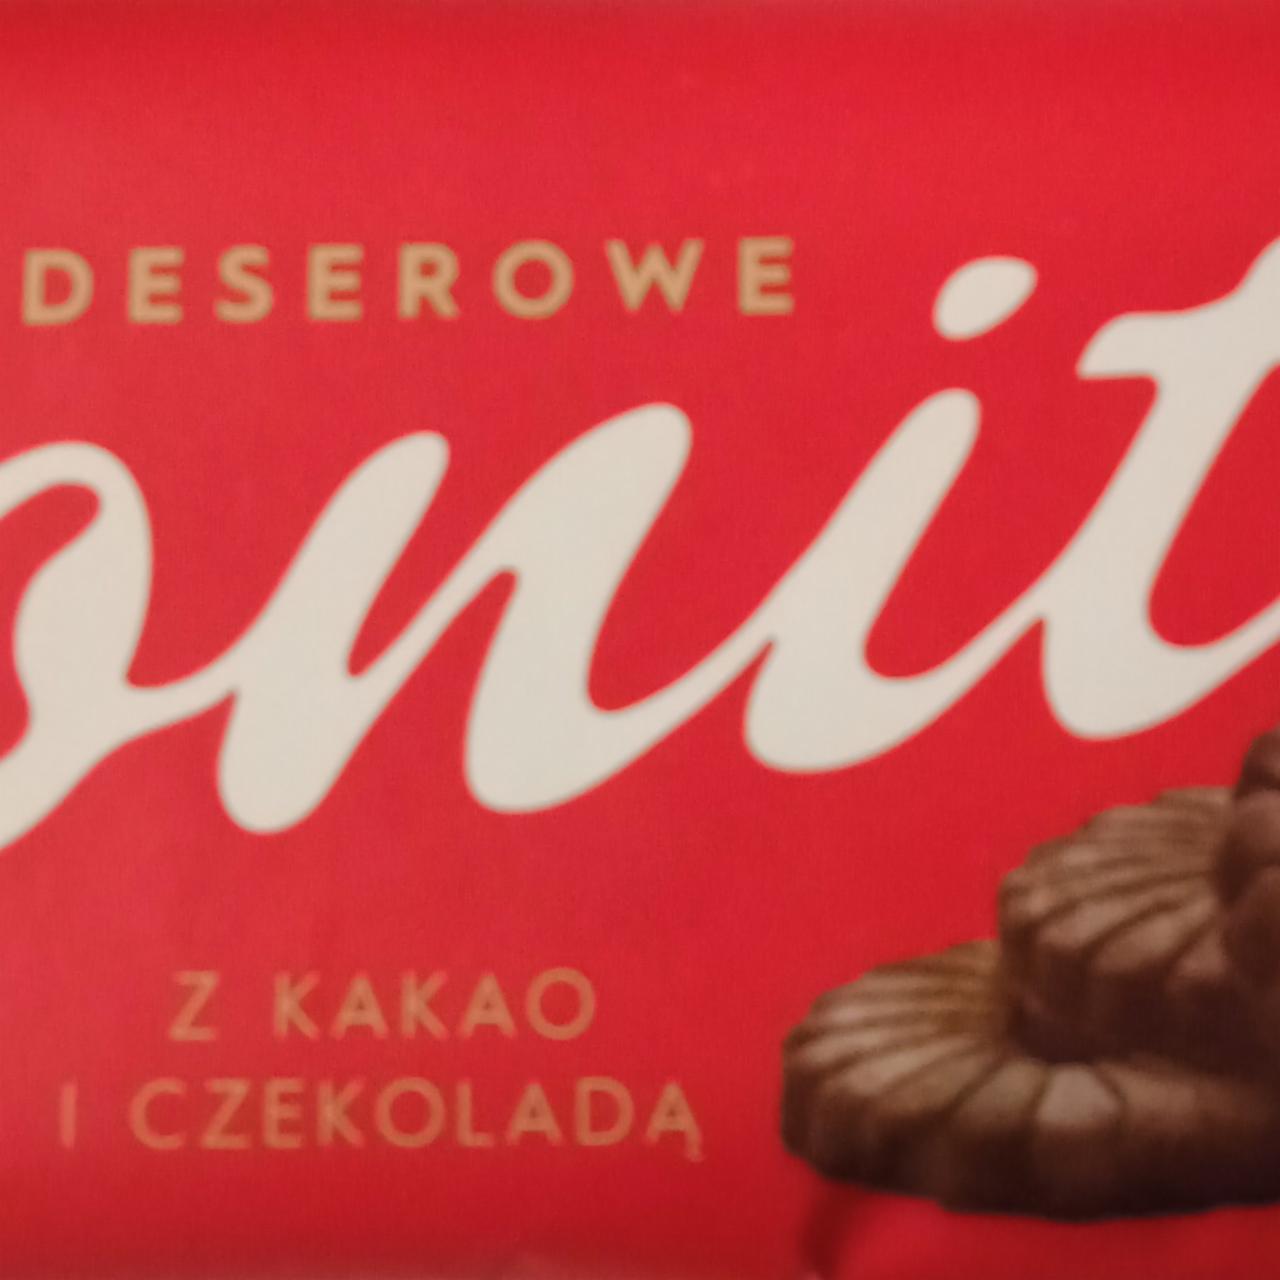 Zdjęcia - Bonitki deserowe z kakao i czekoladą